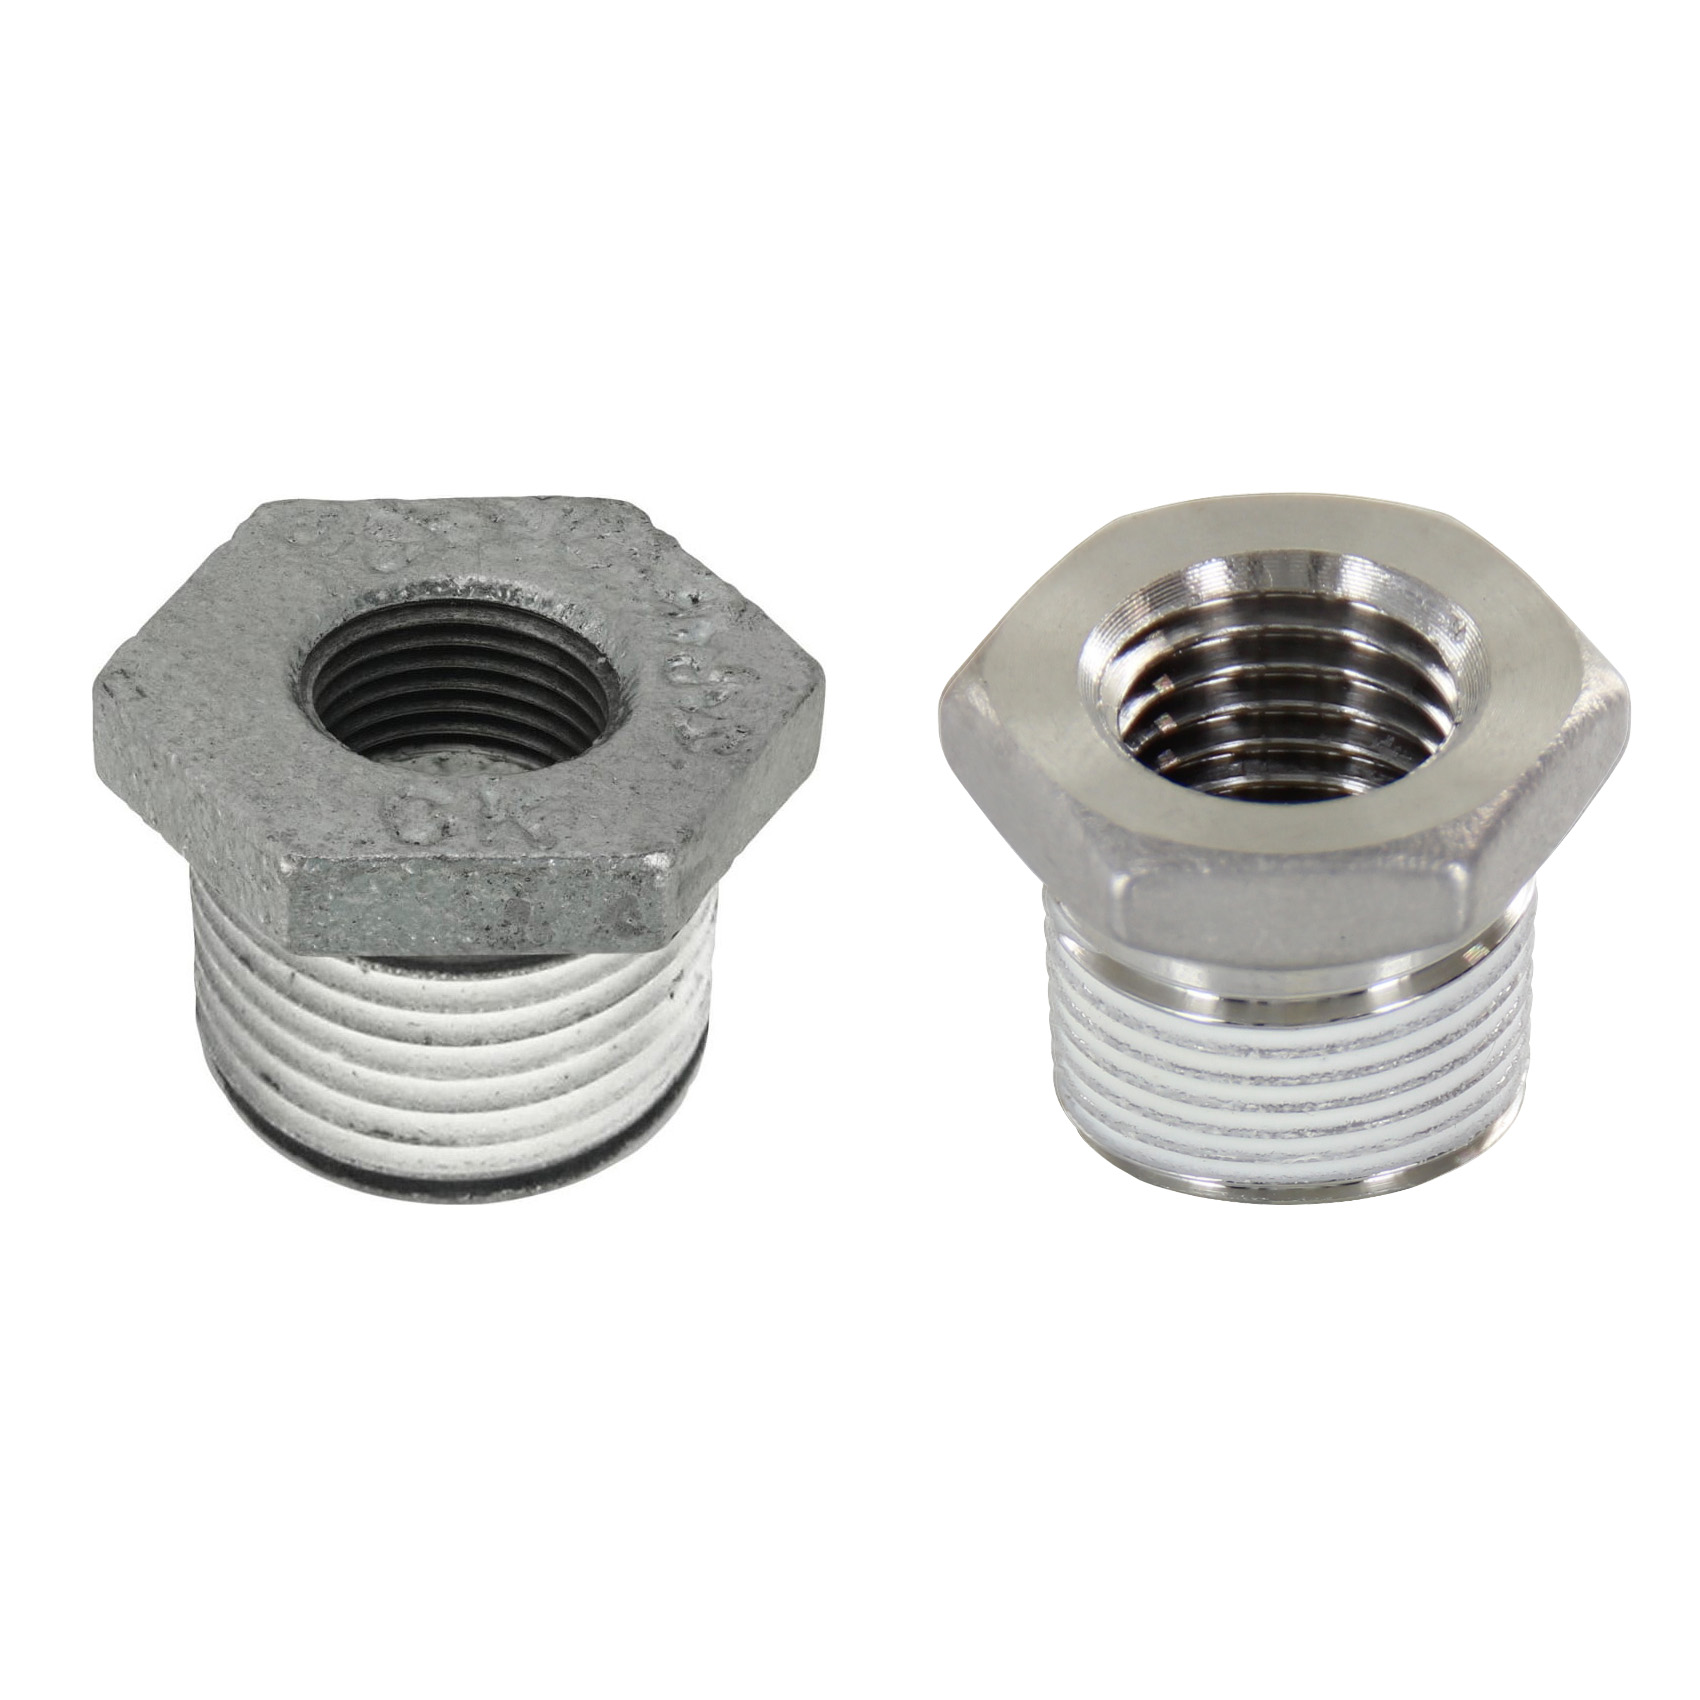 Low Pressure Screw Fittings - Thread Coated Type - Steel Pipe Fittings - Bushings SGCPB34